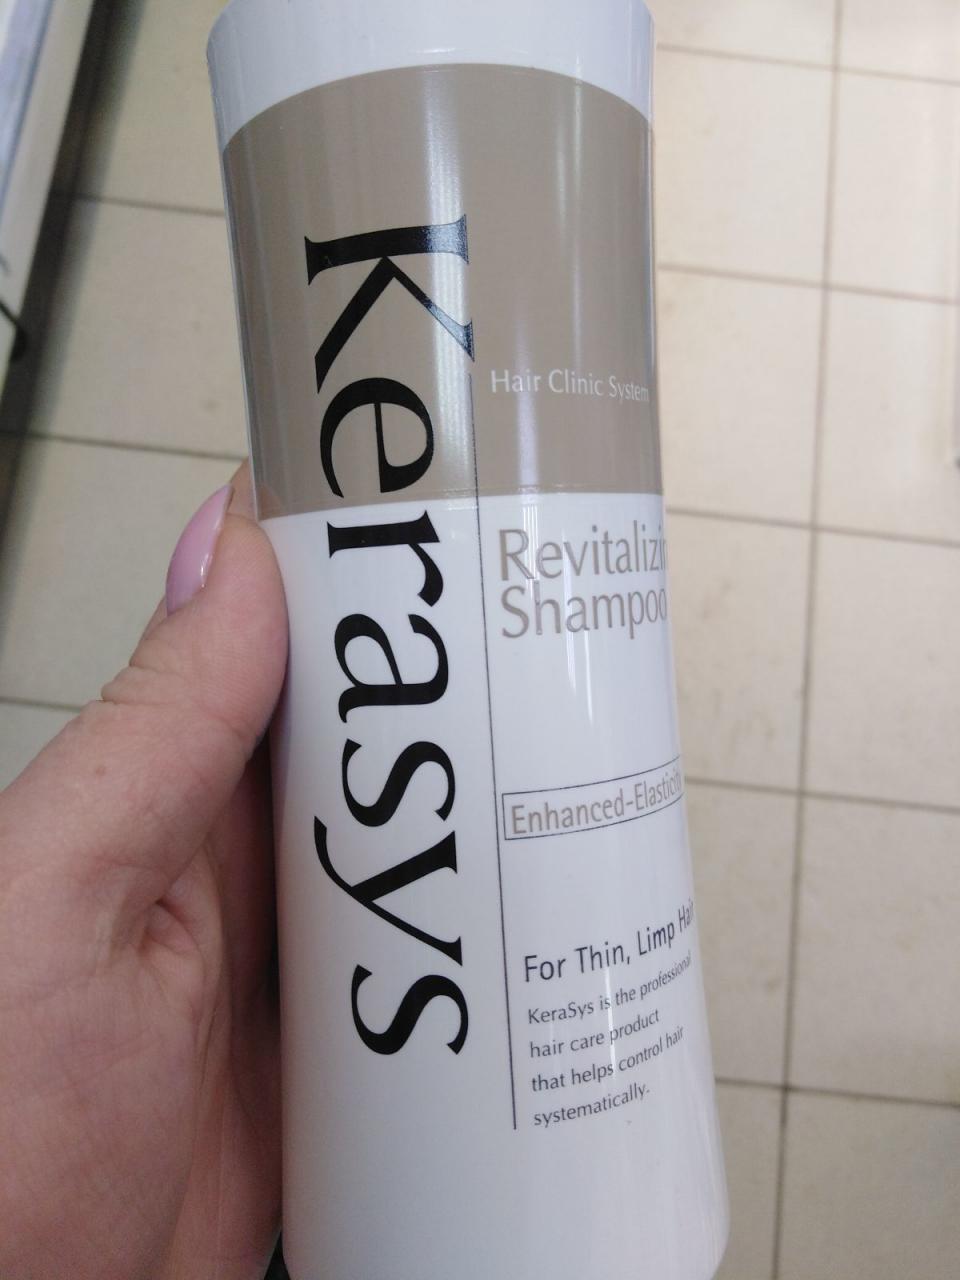 Отзыв на товар: Шампунь для волос Оздоравливающий. KeraSys. Вид 1 от 26.01.2022 